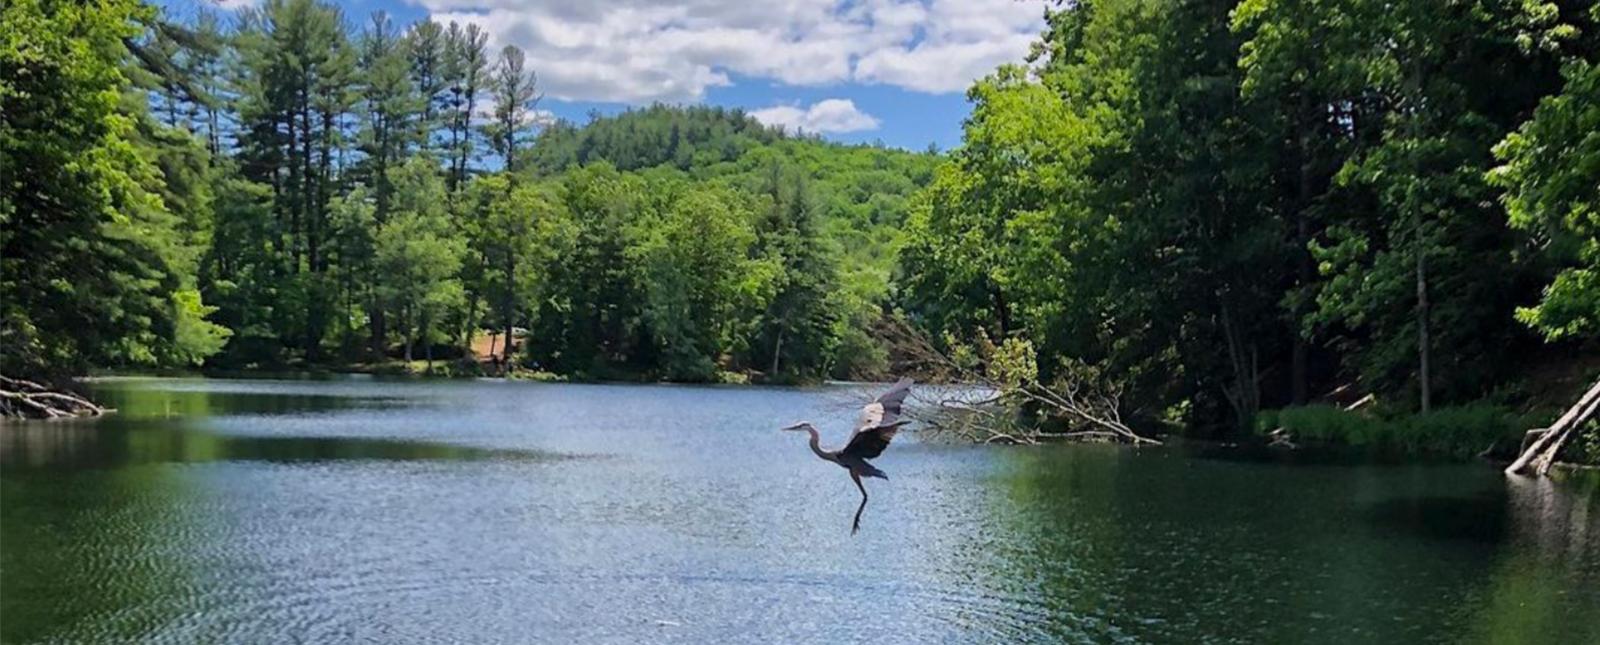 Egret bird taking flight over water at Black Rock State Park (Instagram@vlawwtravels)